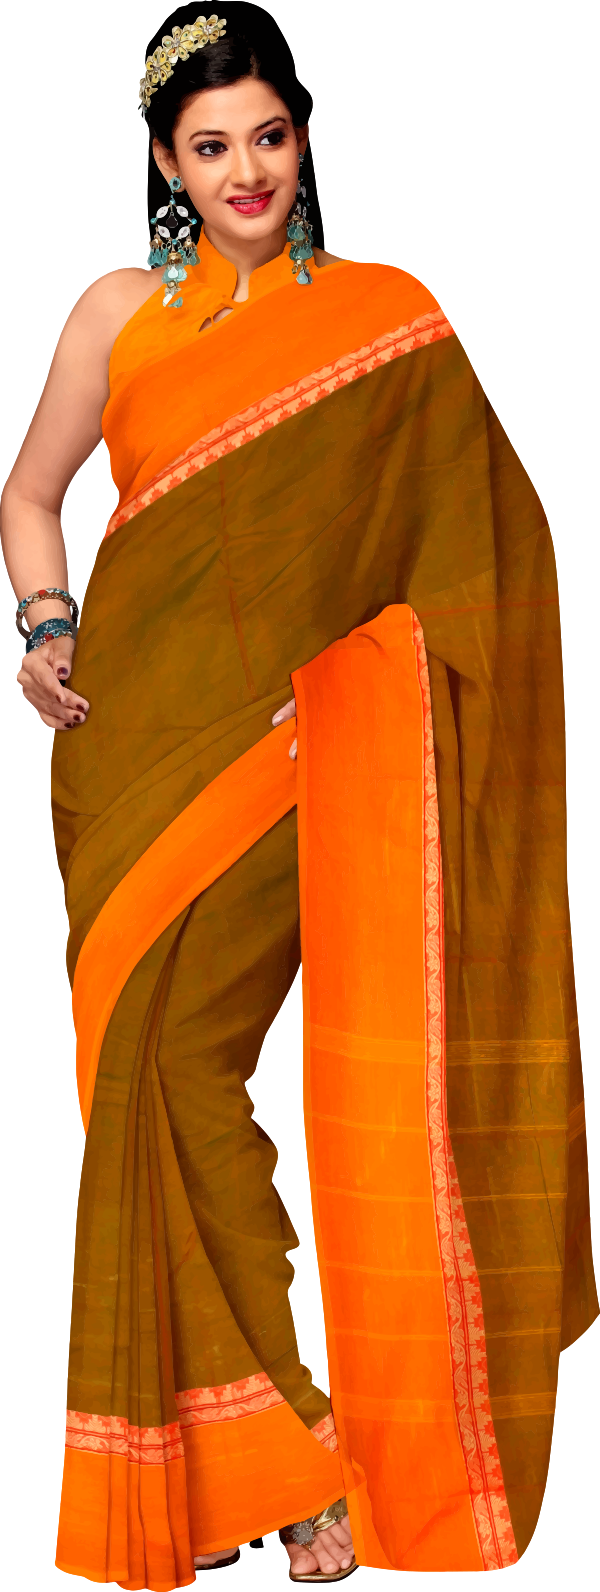 woman in saree 2